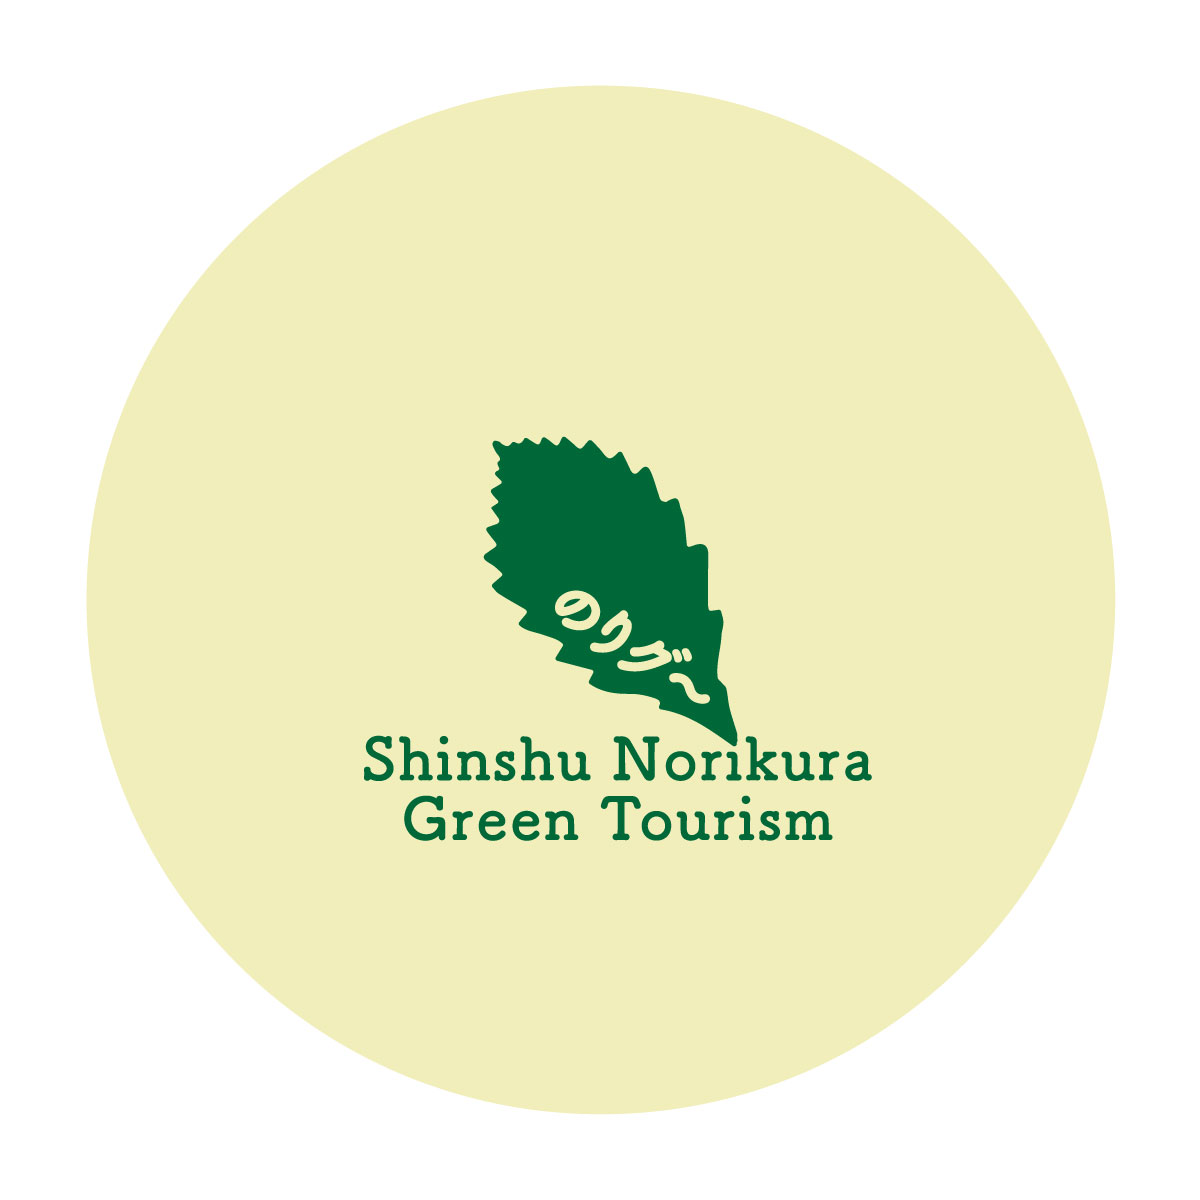 Shinshu Norikura Green Tourism